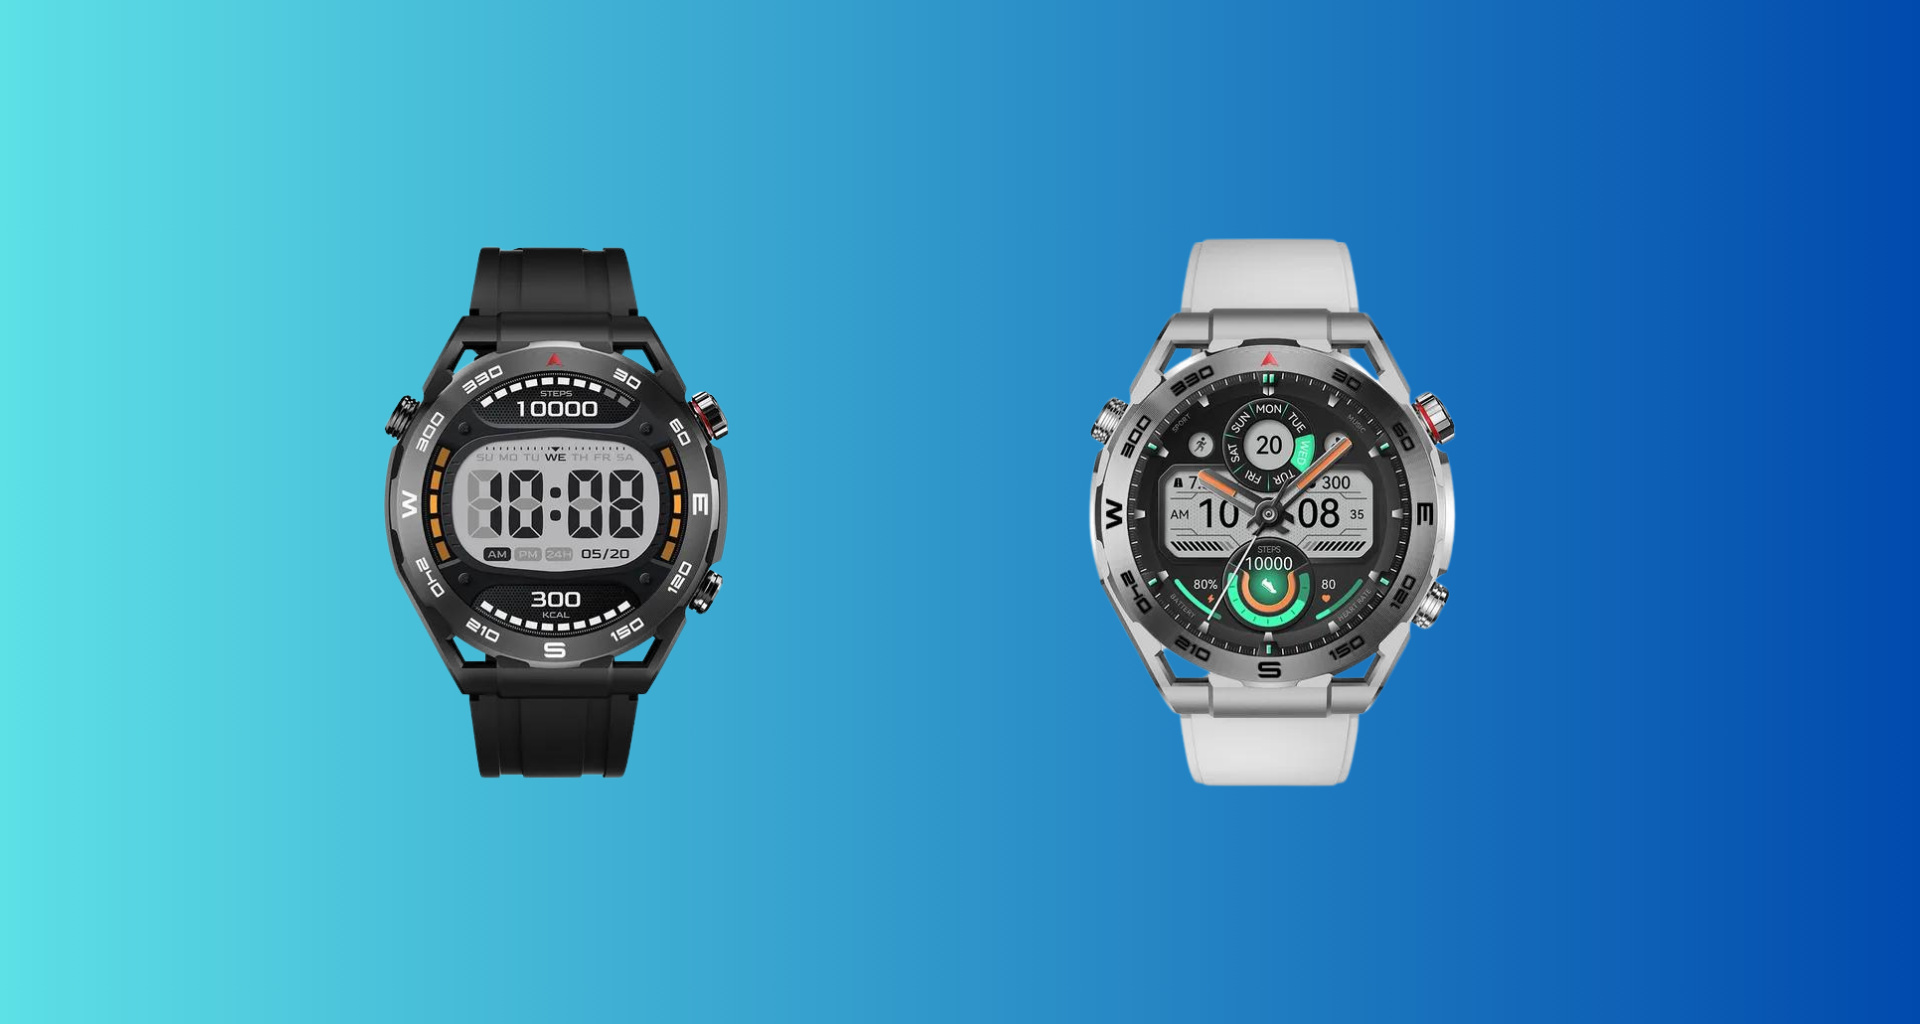 Review: haylou watch r8, relógio robusto com bom custo-benefício. Novo smartwatch da fabricante chinesa oferece ao usuário um produto com dezenas de funções e bateria de longa duração, confira!